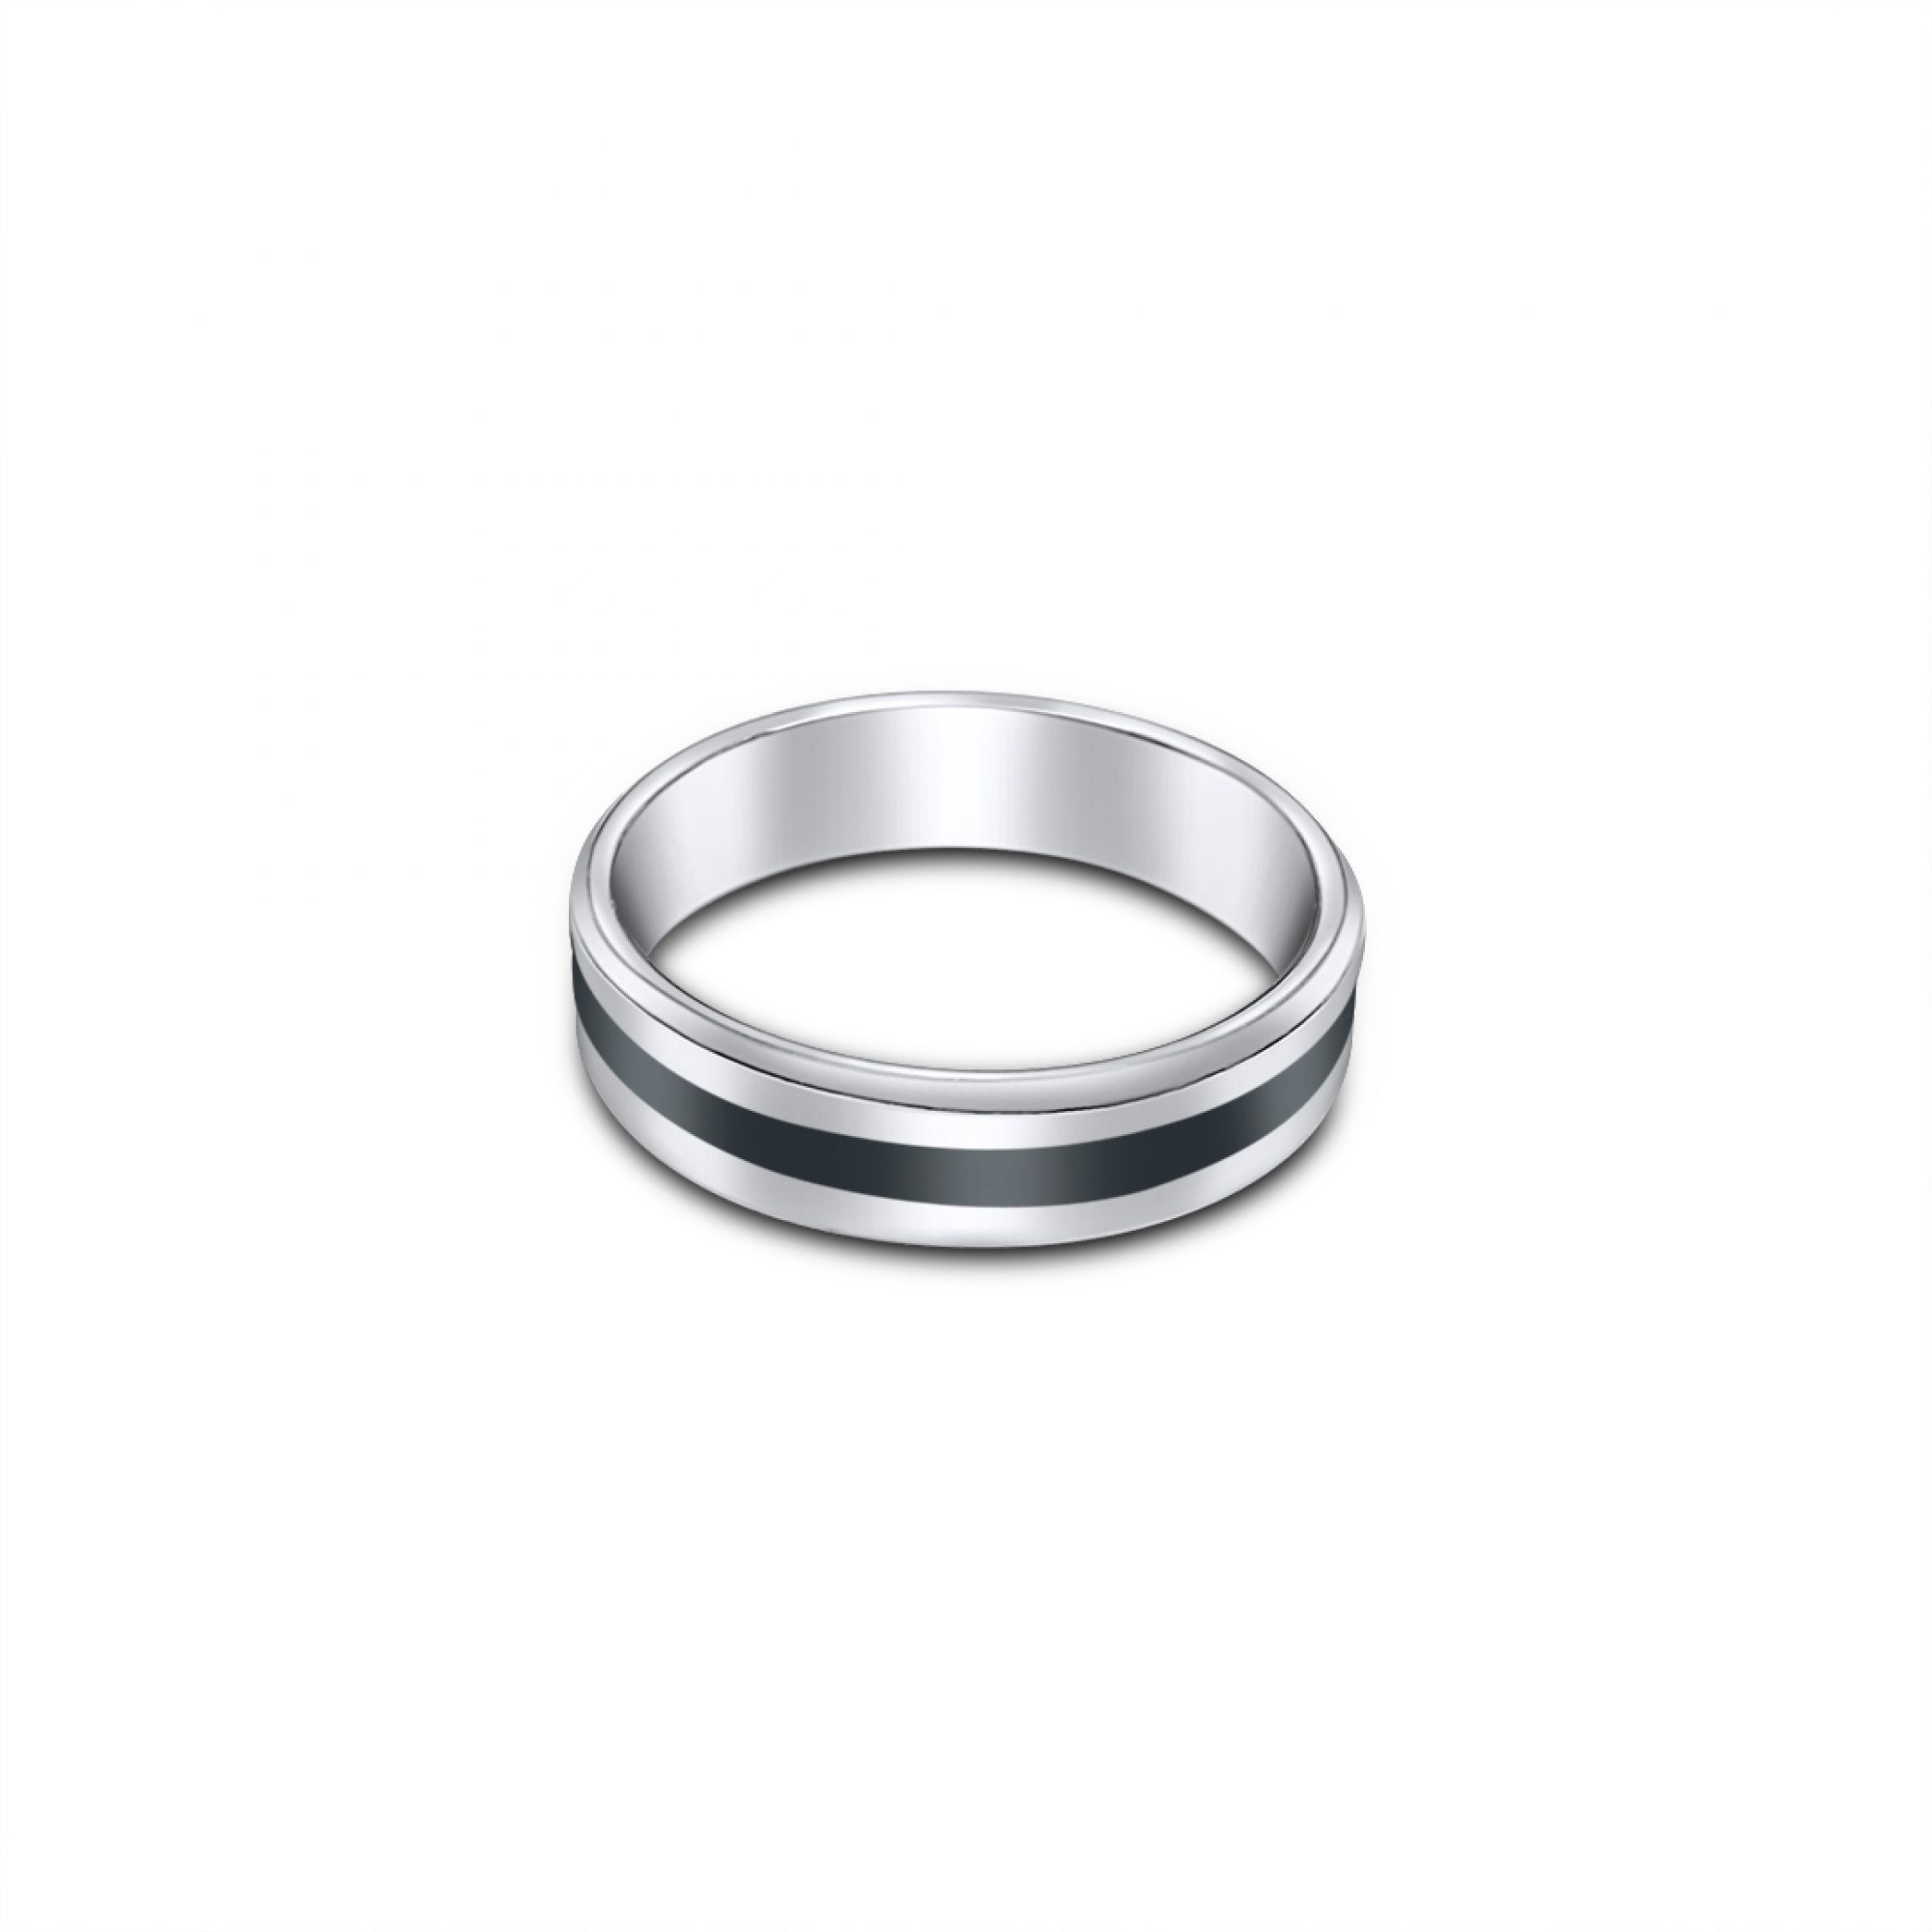 Black centered steel ring